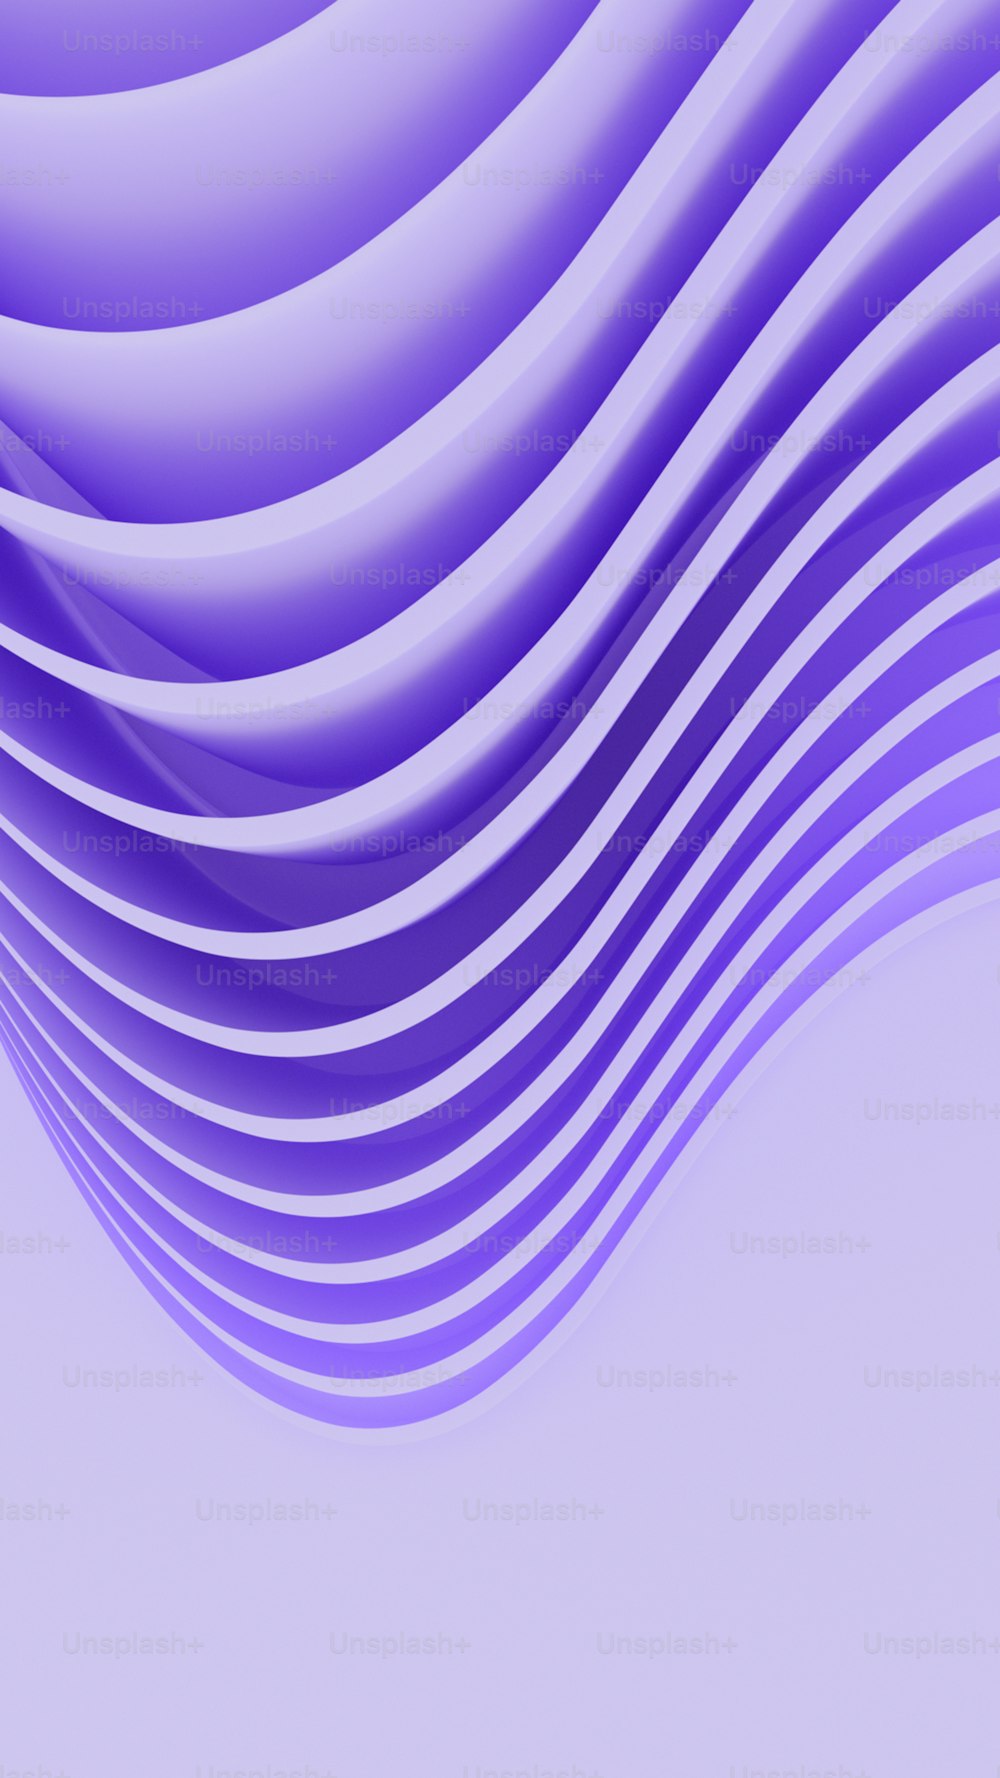 Un fond violet abstrait avec des lignes ondulées